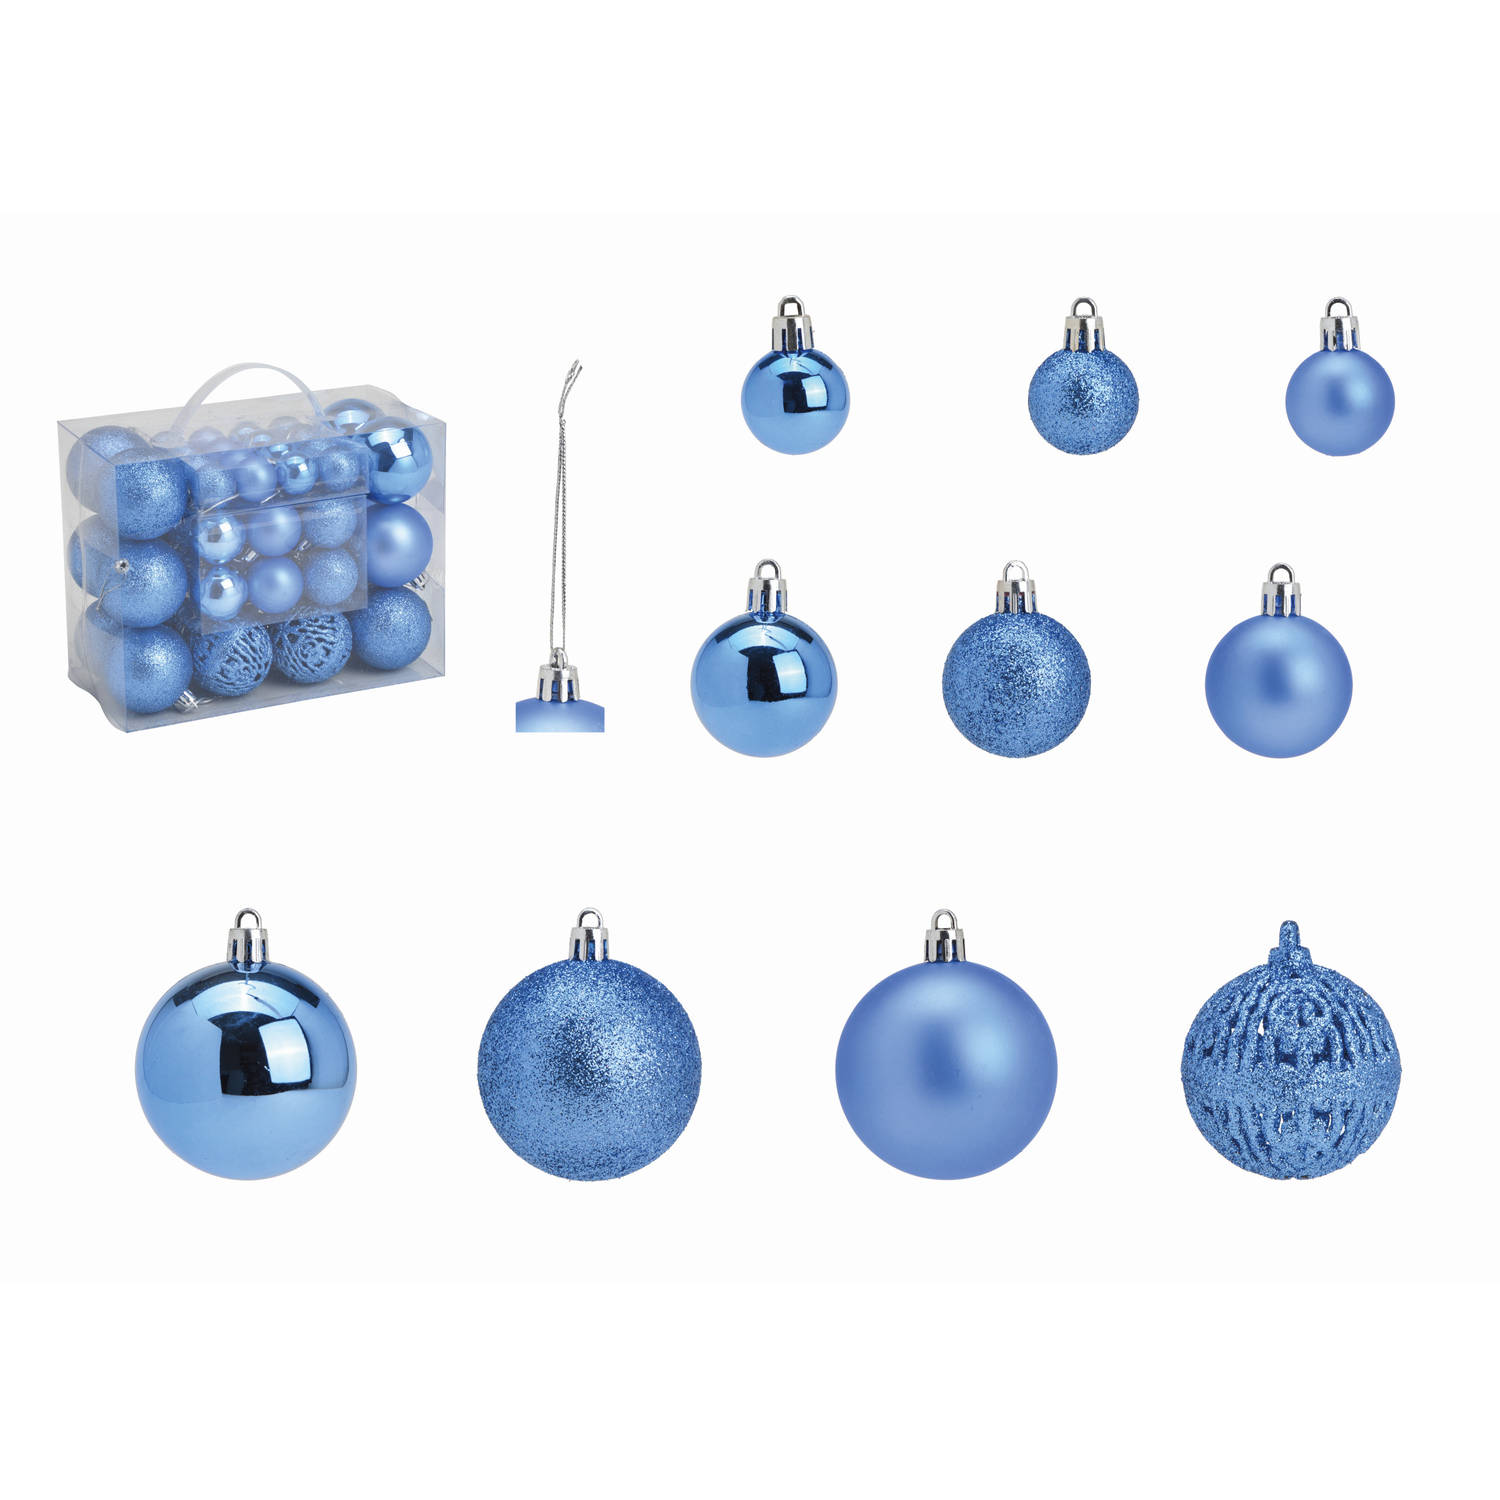 G. Wurm kerstballen 50x stuks 3, 4 en 6 cm blauw kunststof Kerstbal